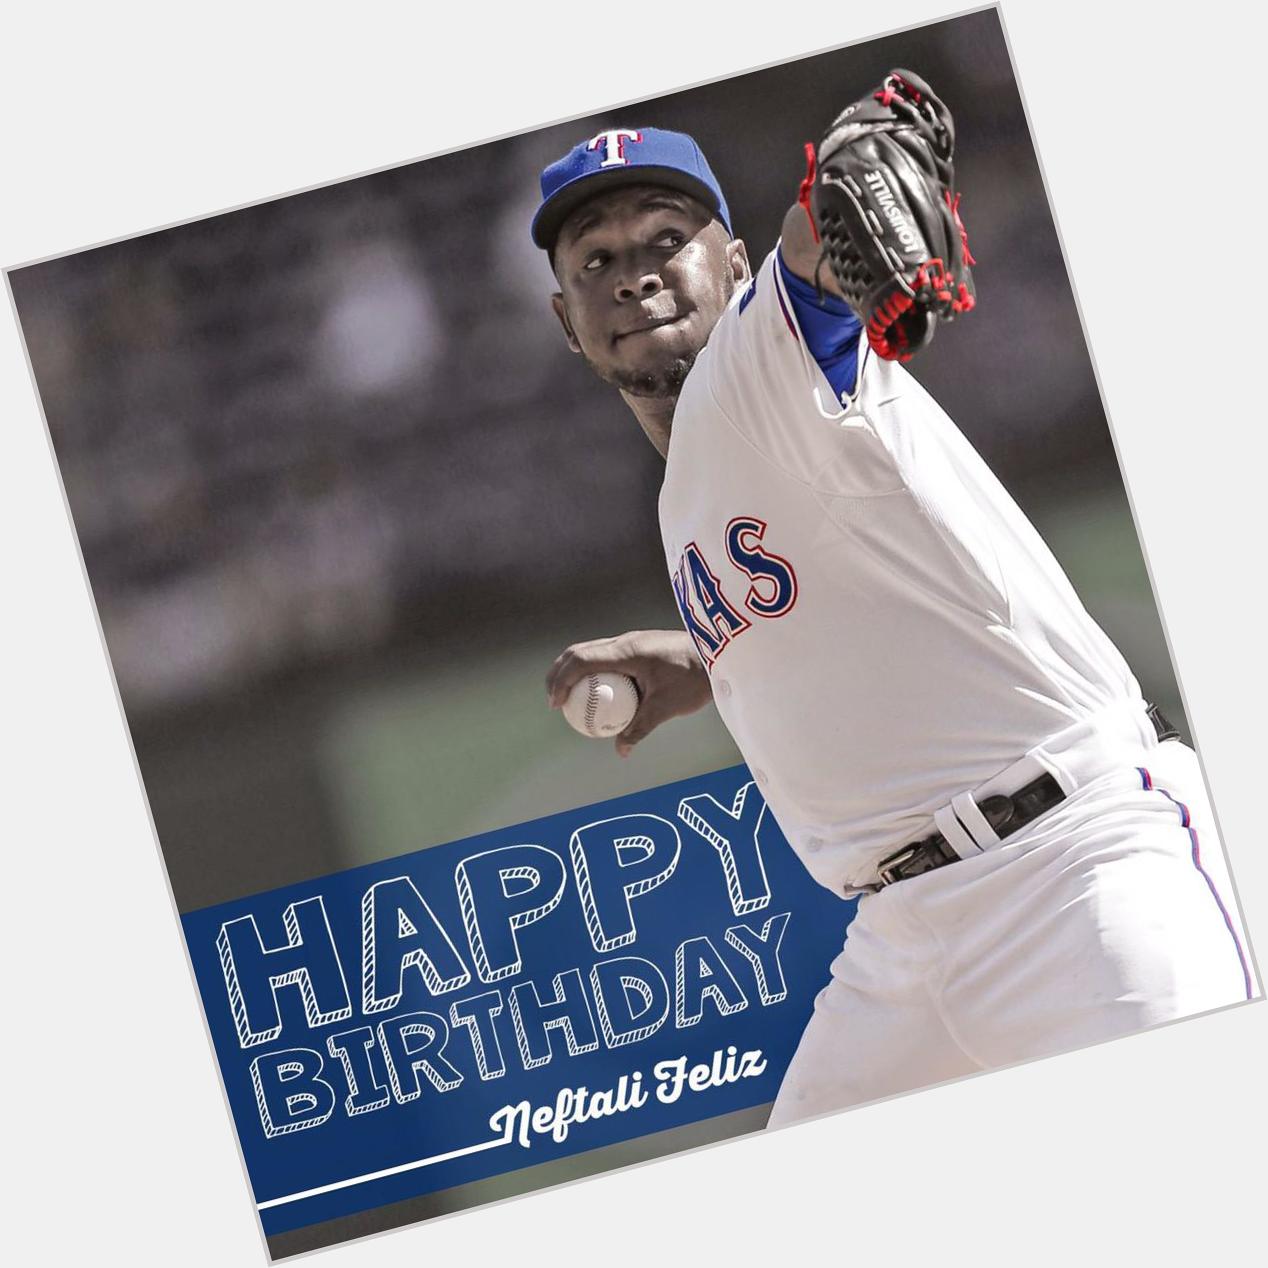 Happy birthday to one of my favorite pitchers neftali Feliz!!! 